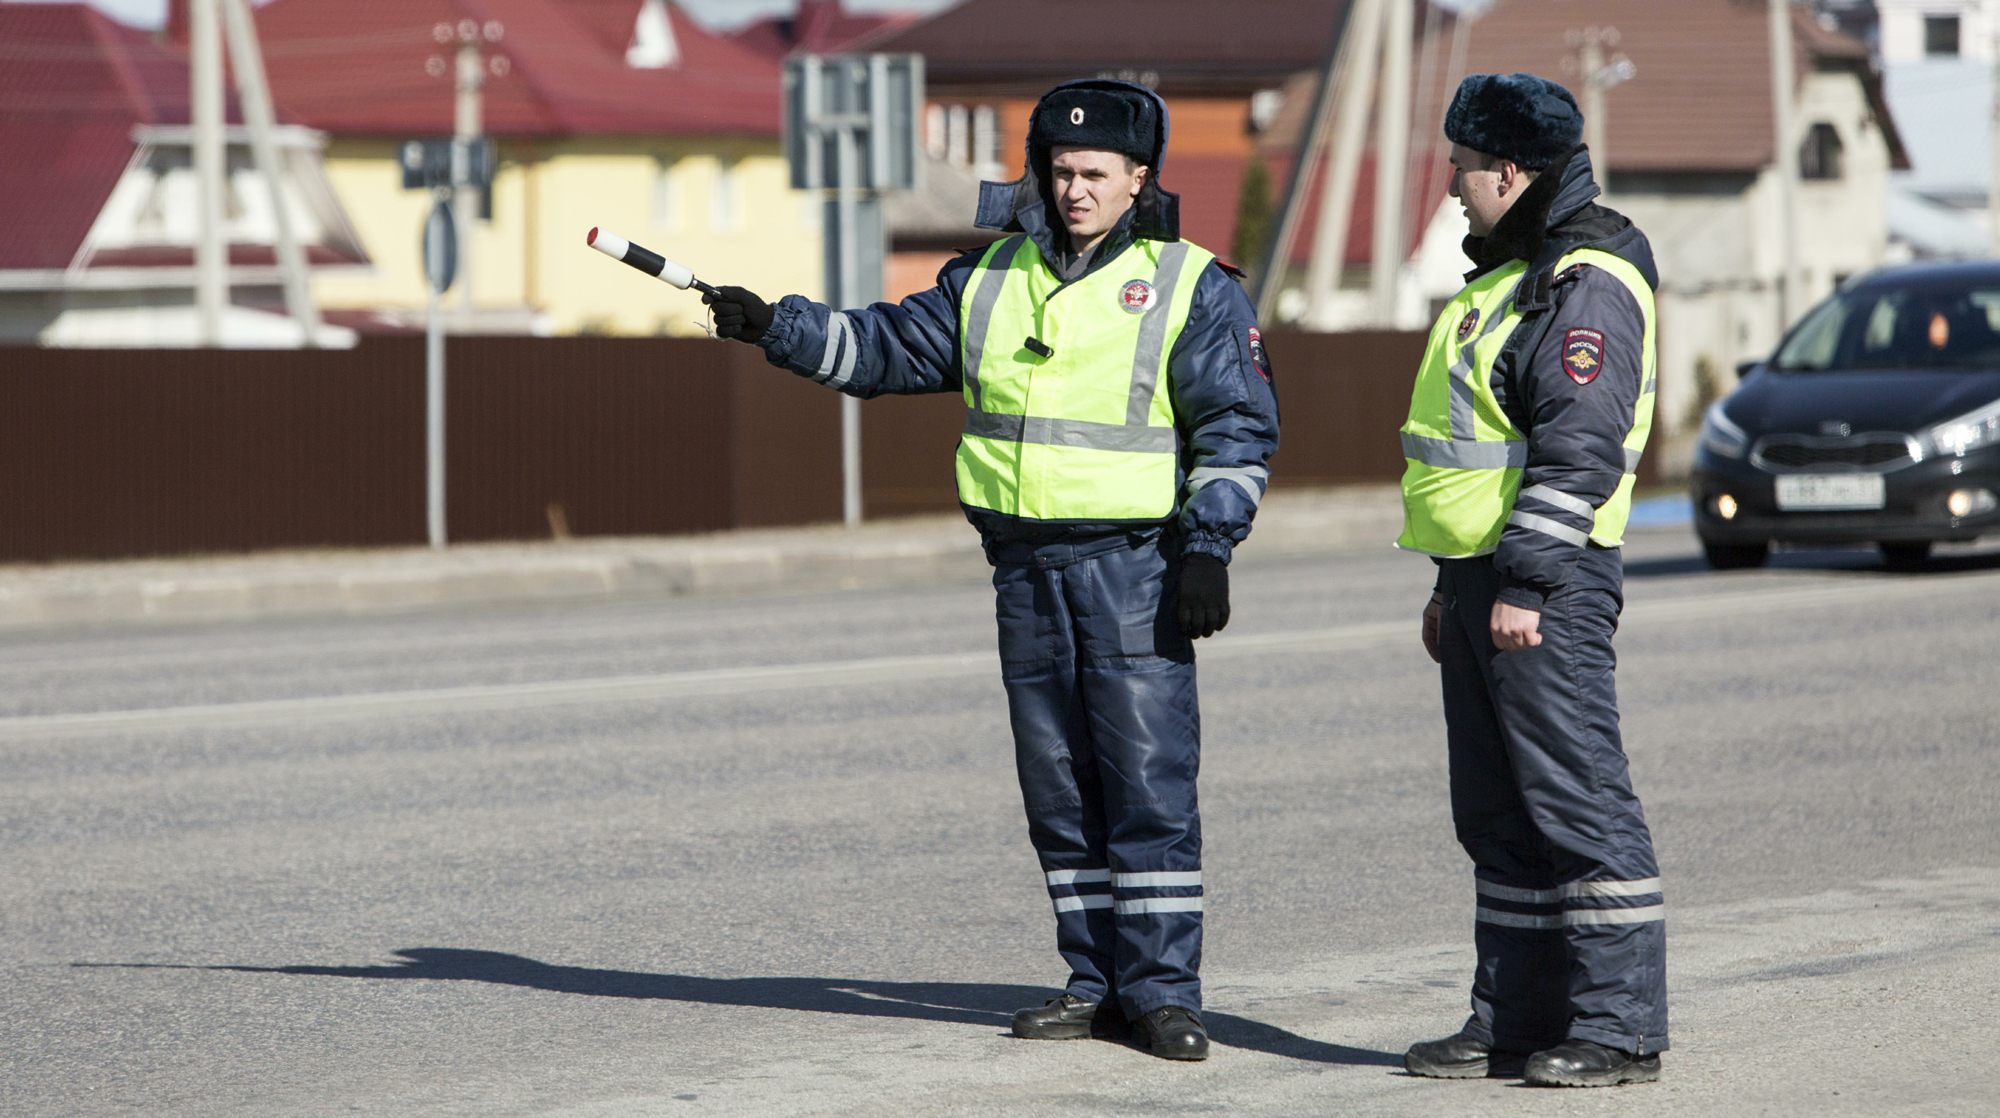 Обновленный свод правил государственной автоинспекции наделил инспекторов новыми полномочиями и расширил их обязанности Фото: © GLOBAL LOOK press/Nikolay Gyngazov